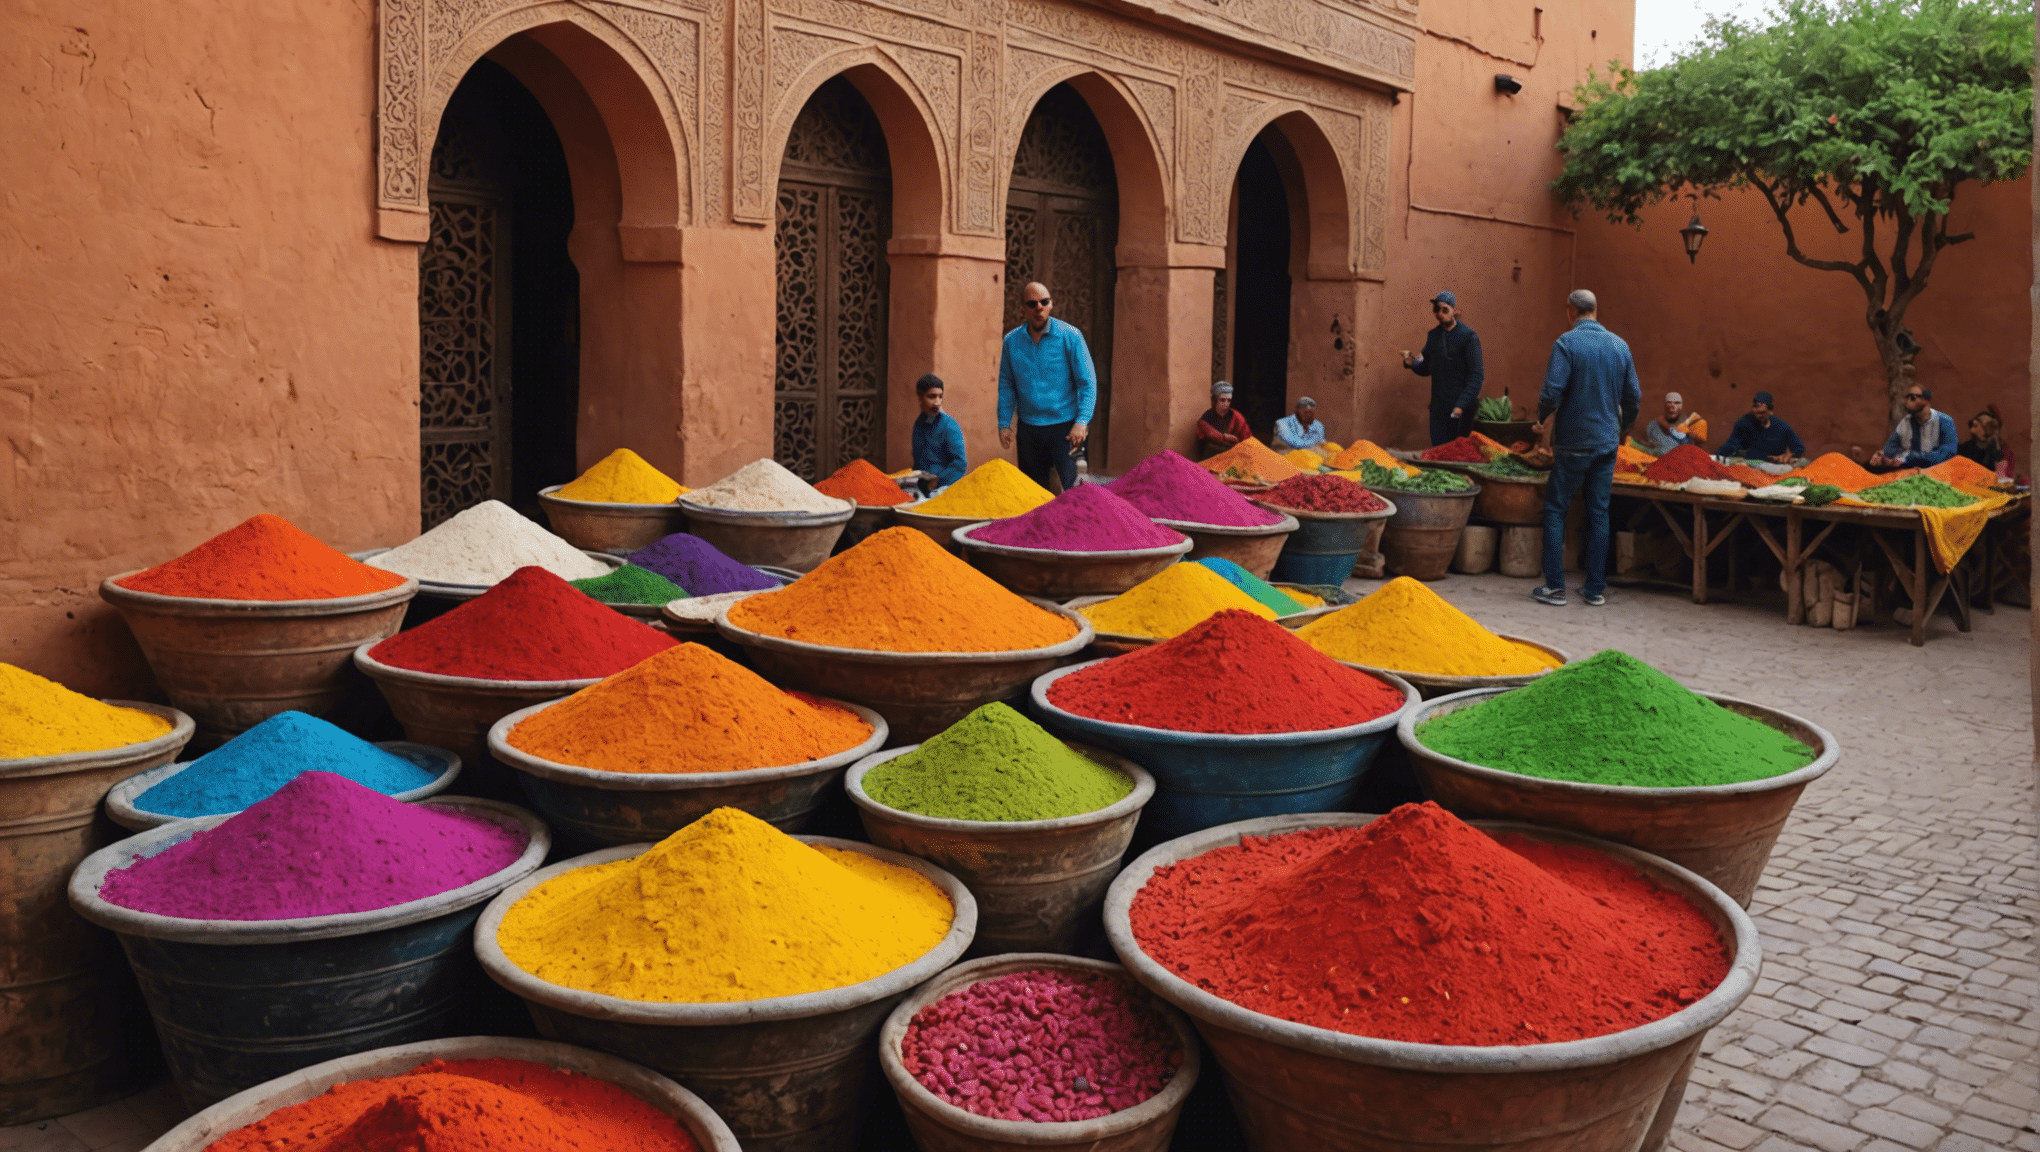 Entdecken Sie mit diesen tollen Optionen unterhaltsame und familienfreundliche Aktivitäten in Marrakesch!